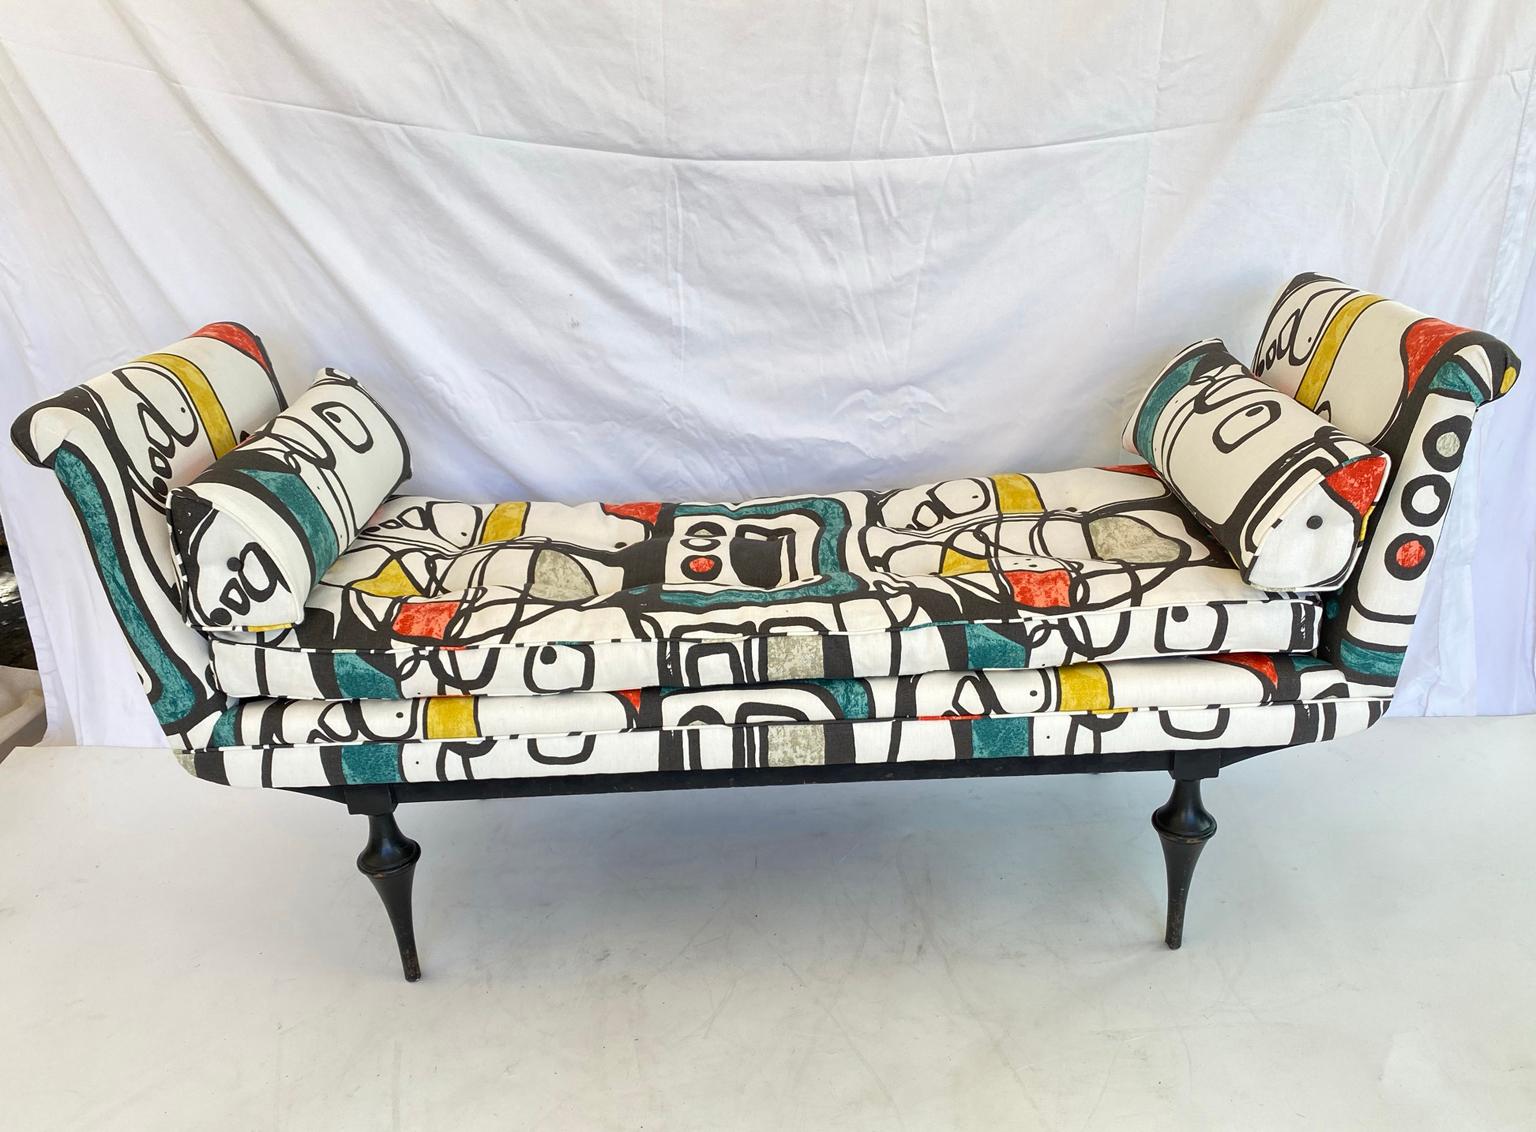 Sofa im Stil eines Tagesbettes, gepolstert mit einem von Joan Miró inspirierten Stoff, mit einem langen, geknöpften Mittelkissen, flankiert von gepolsterten, ausgerollten Armlehnen und dreieckigen Nackenkissen, auf einem schwarz lackierten Rahmen,